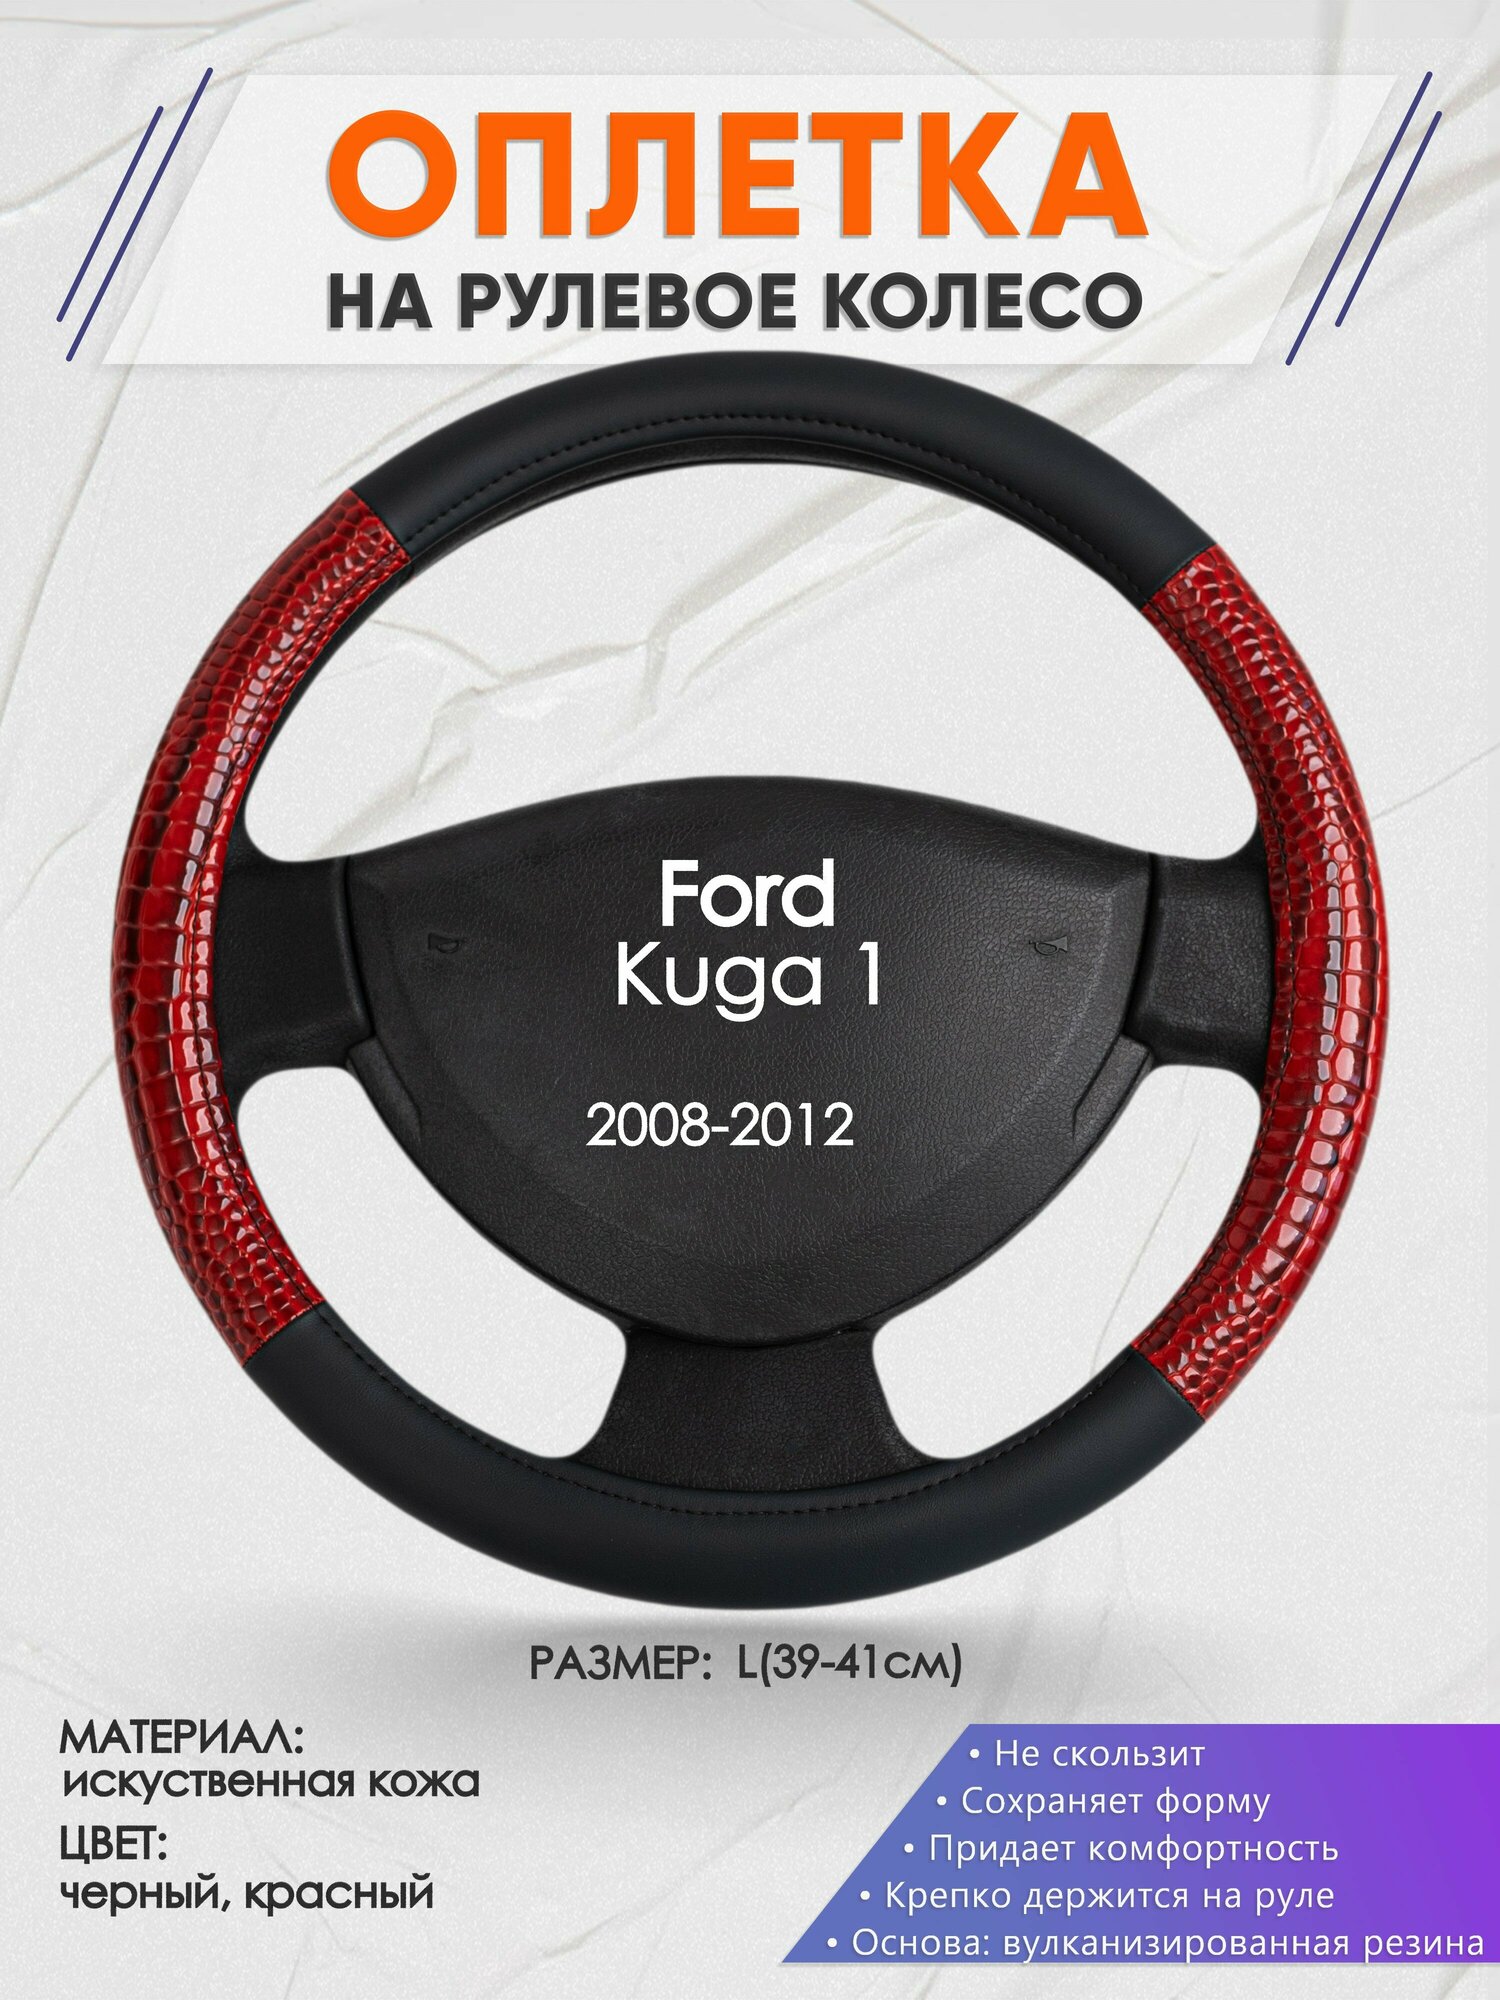 Оплетка на руль для Ford Kuga 1(Форд Куга 1) 2008-2012, L(39-41см), Искусственная кожа 16